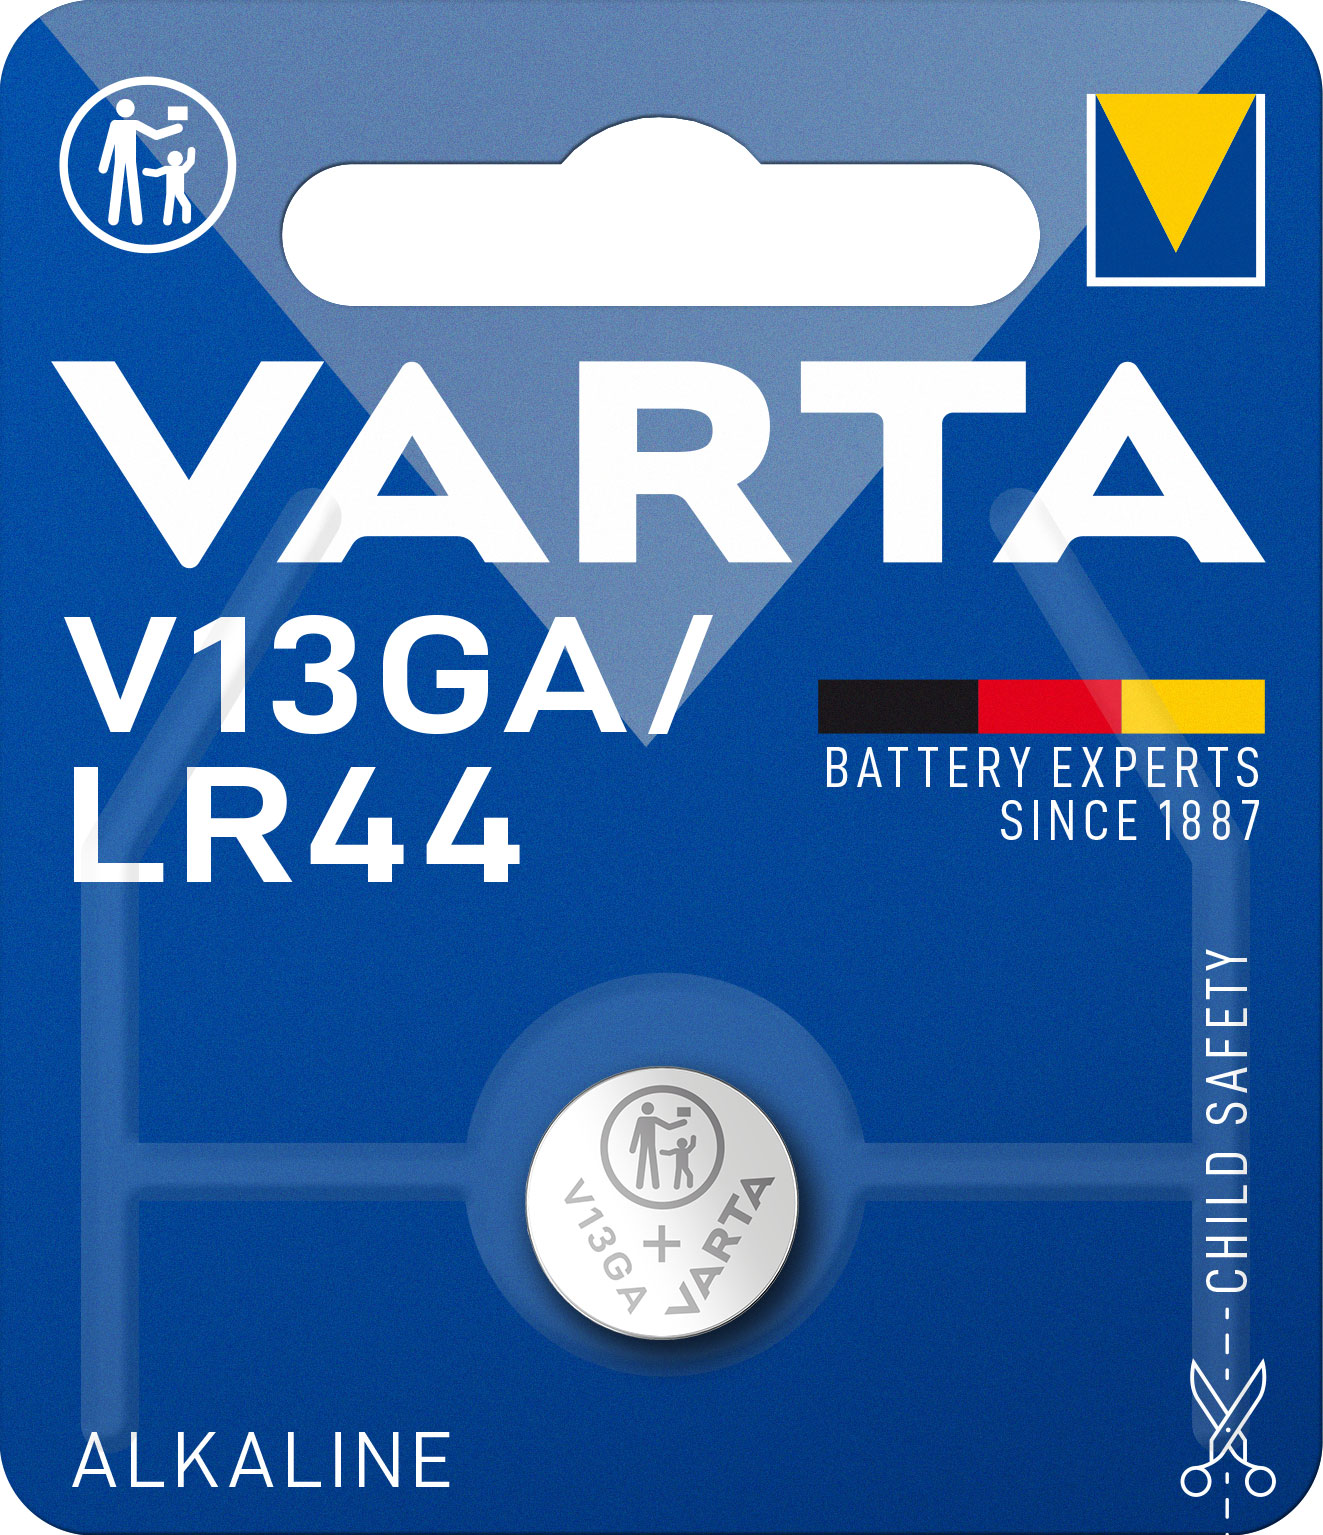 VARTA ALKALINE V13GA, LR44 (SPECIAL BATTERY, 1,5V) PACK OF 1